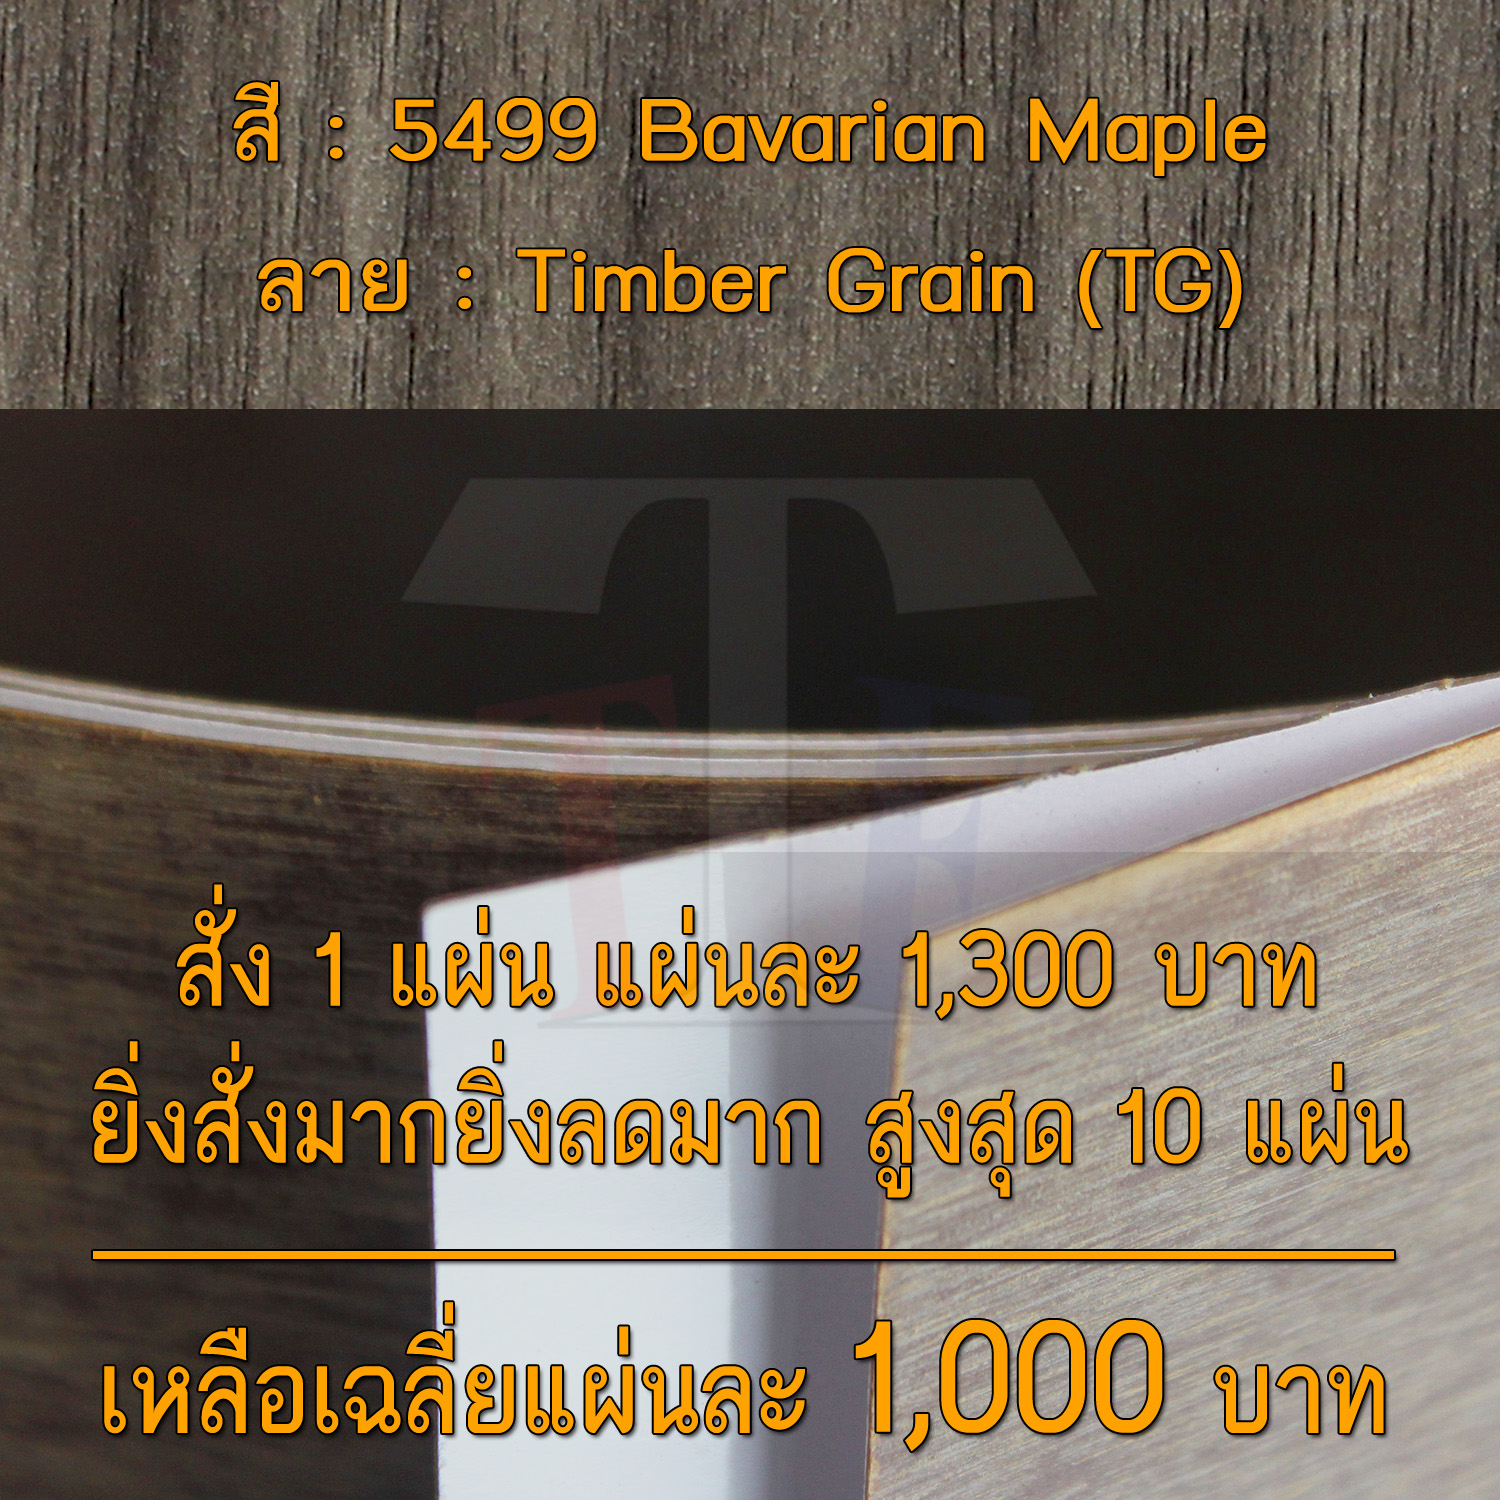 แผ่นโฟเมก้า แผ่นลามิเนต ยี่ห้อ TD Board ลายไม้เมเปิล รหัส 5499 Bavarian Maple พื้นผิวลาย Timber Grain (TG) ขนาด 1220 x 2440 มม. หนา 0.80 มม. ใช้สำหรับงานตกแต่งภายใน งานปิดผิวเฟอร์นิเจอร์ ผนัง และอื่นๆ เพื่อเพิ่มความสวยงาม formica laminate 5499TG